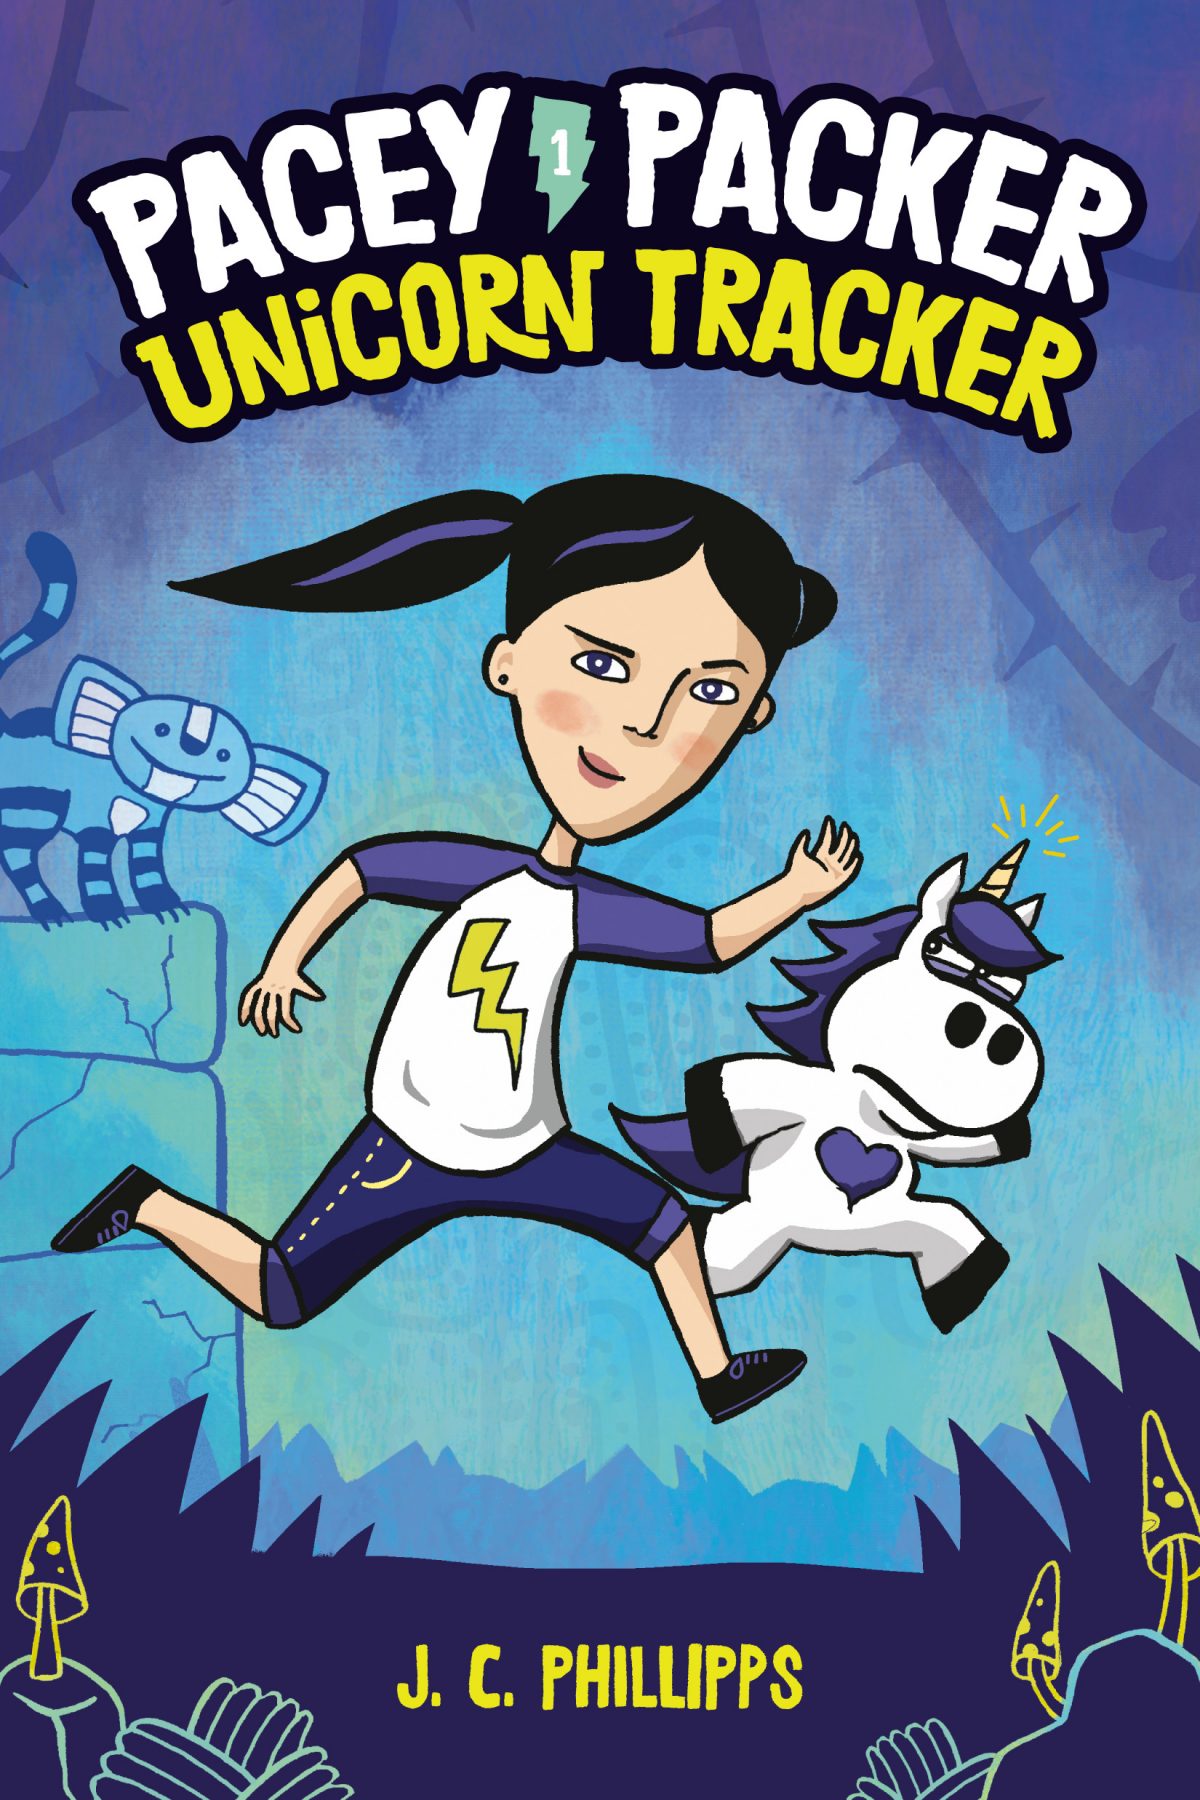 Pacey Packer Unicorn Tracker